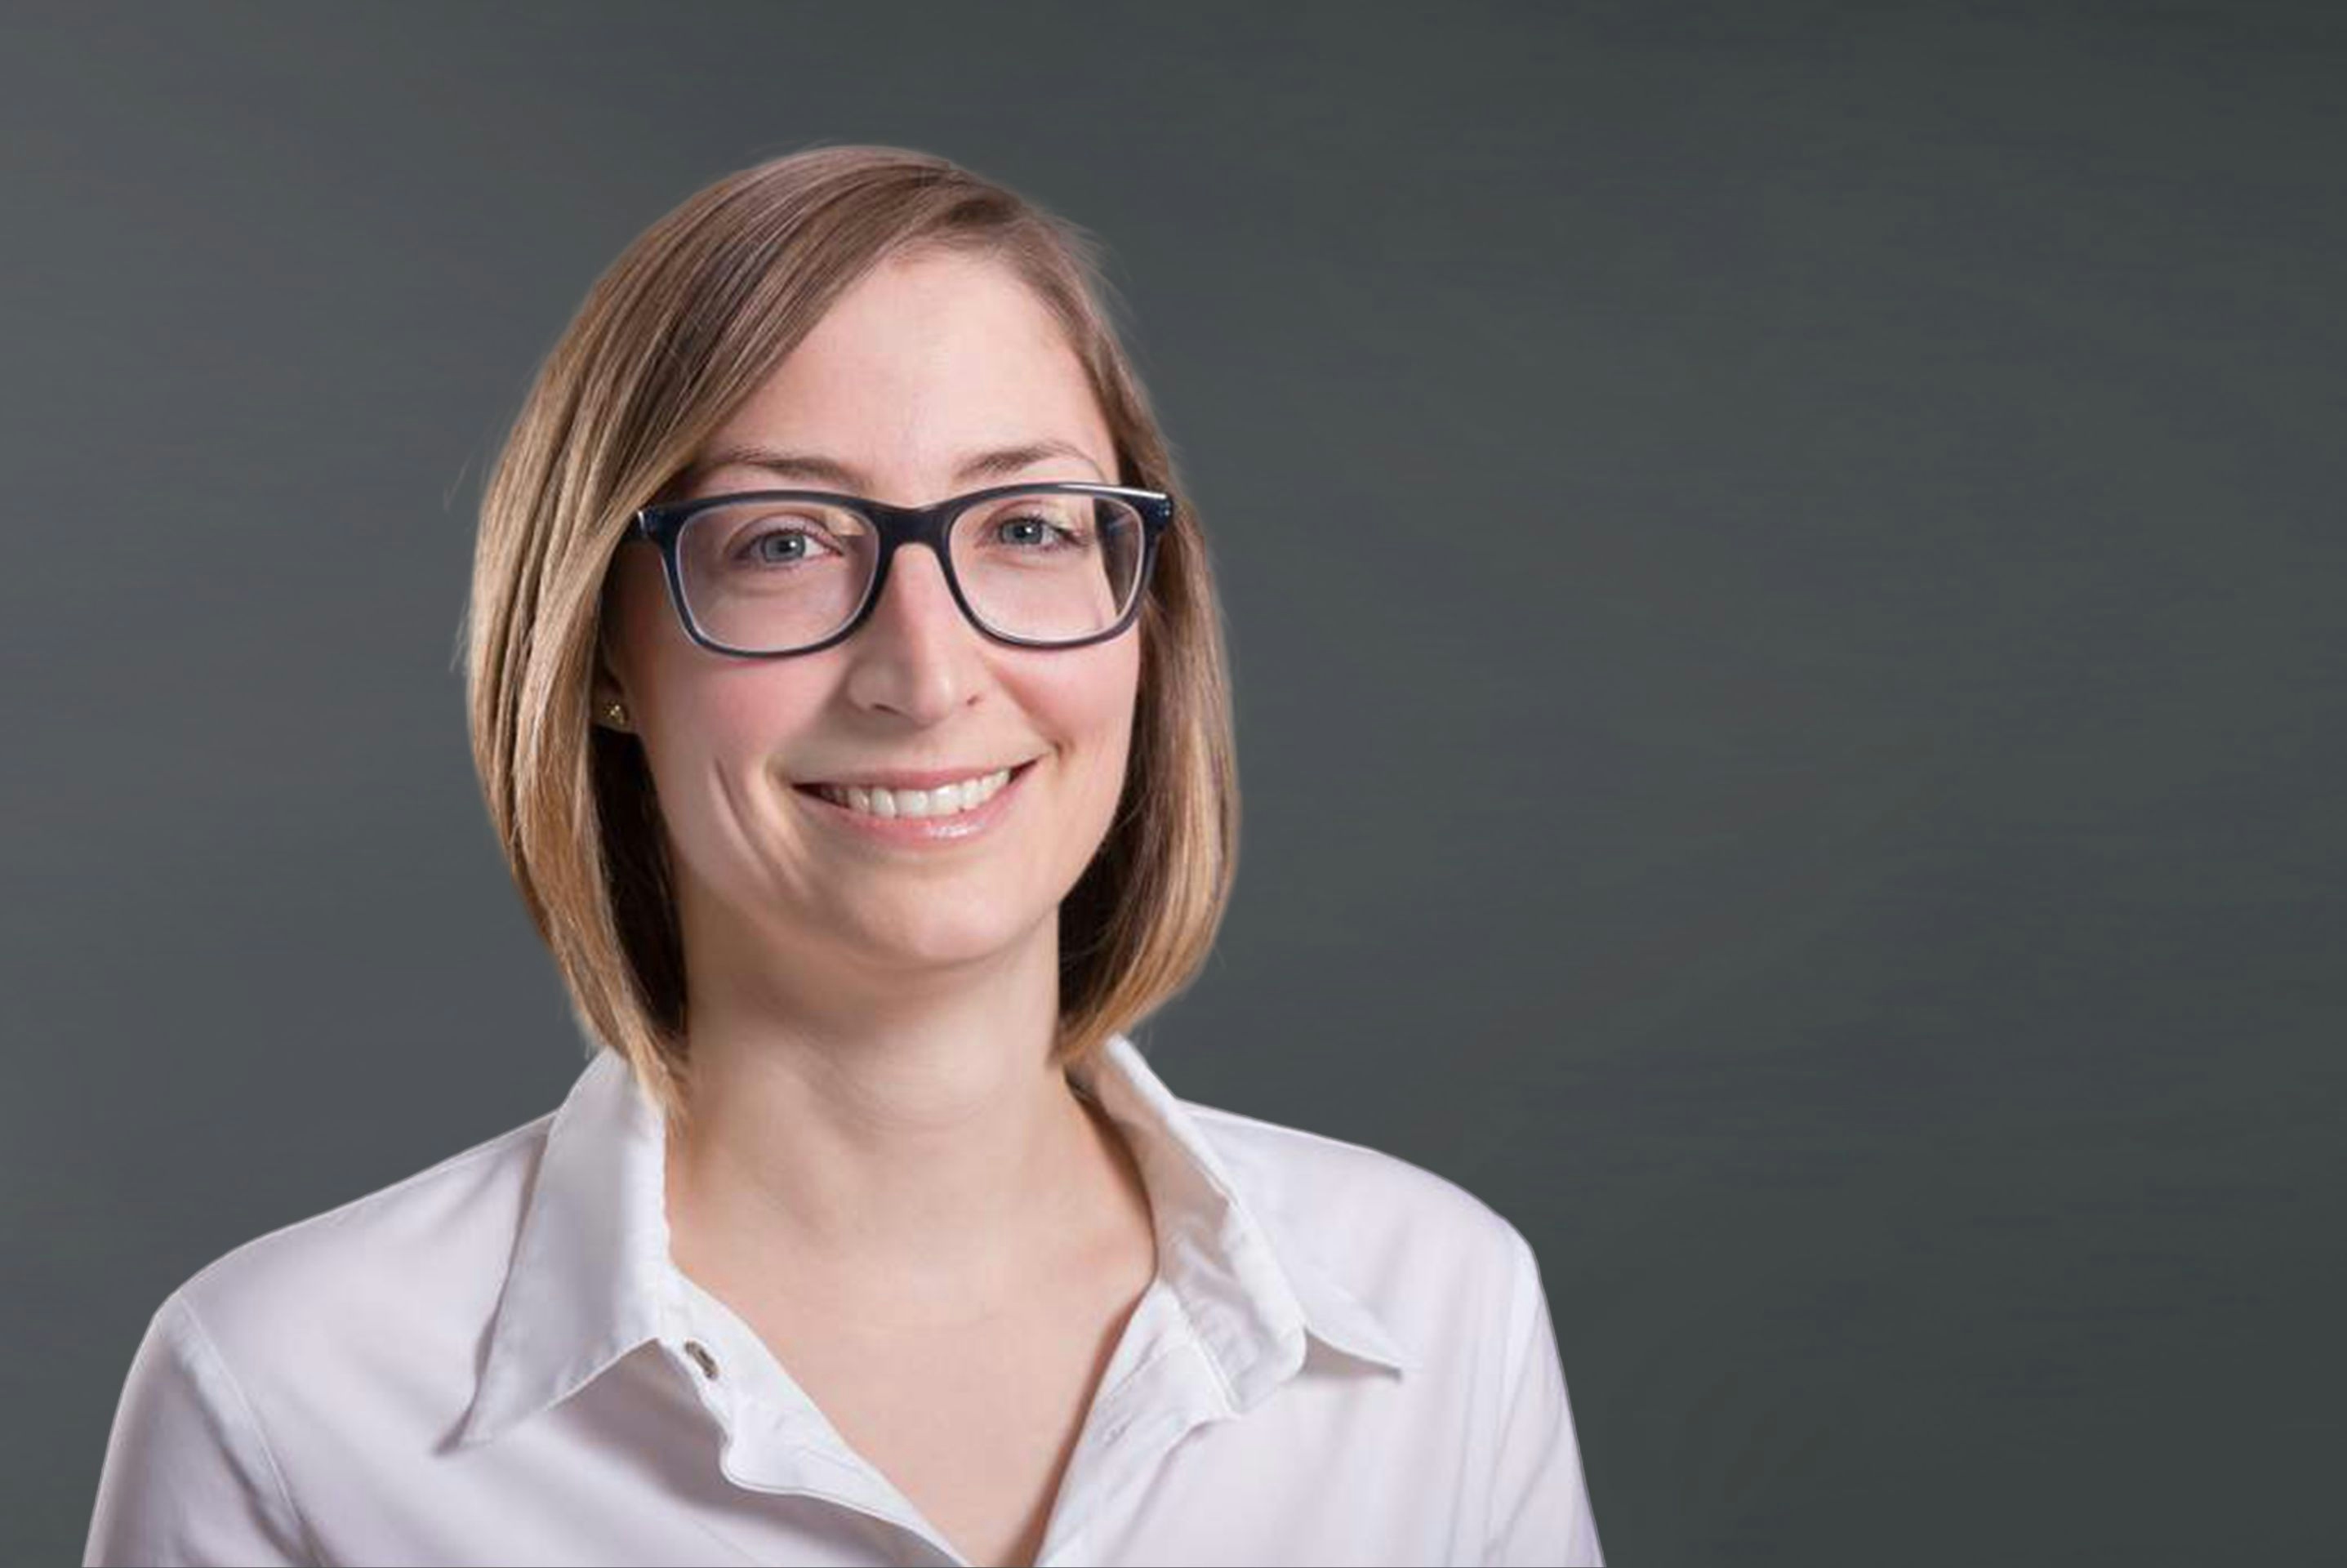 Viktoria Habig Edeka-Angestellte mit Brille und kurzen braunen Haaren, lächelnd